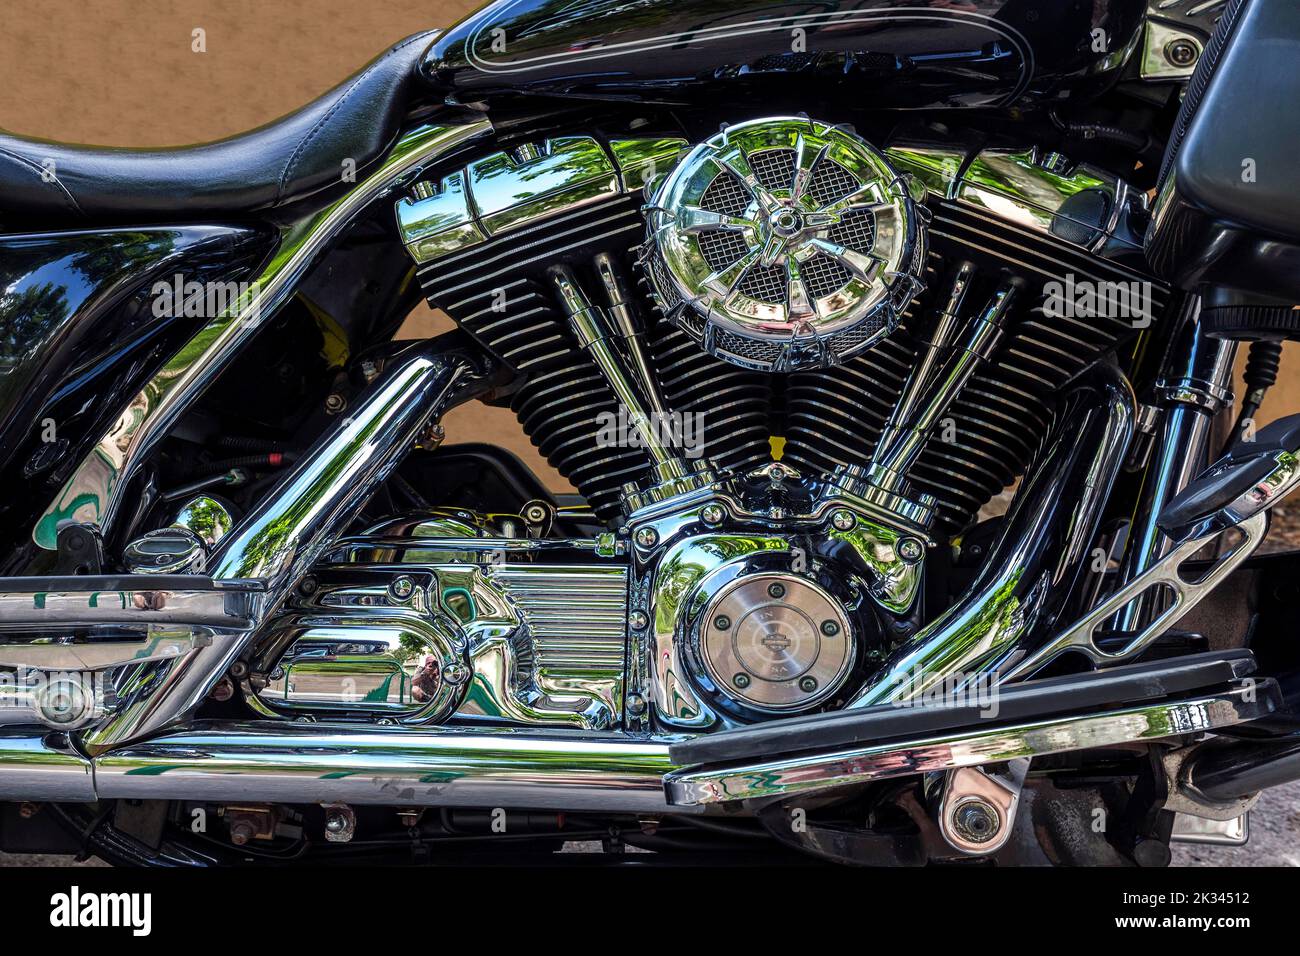 Moto, moteur Harley Davidson, Provence, France Banque D'Images